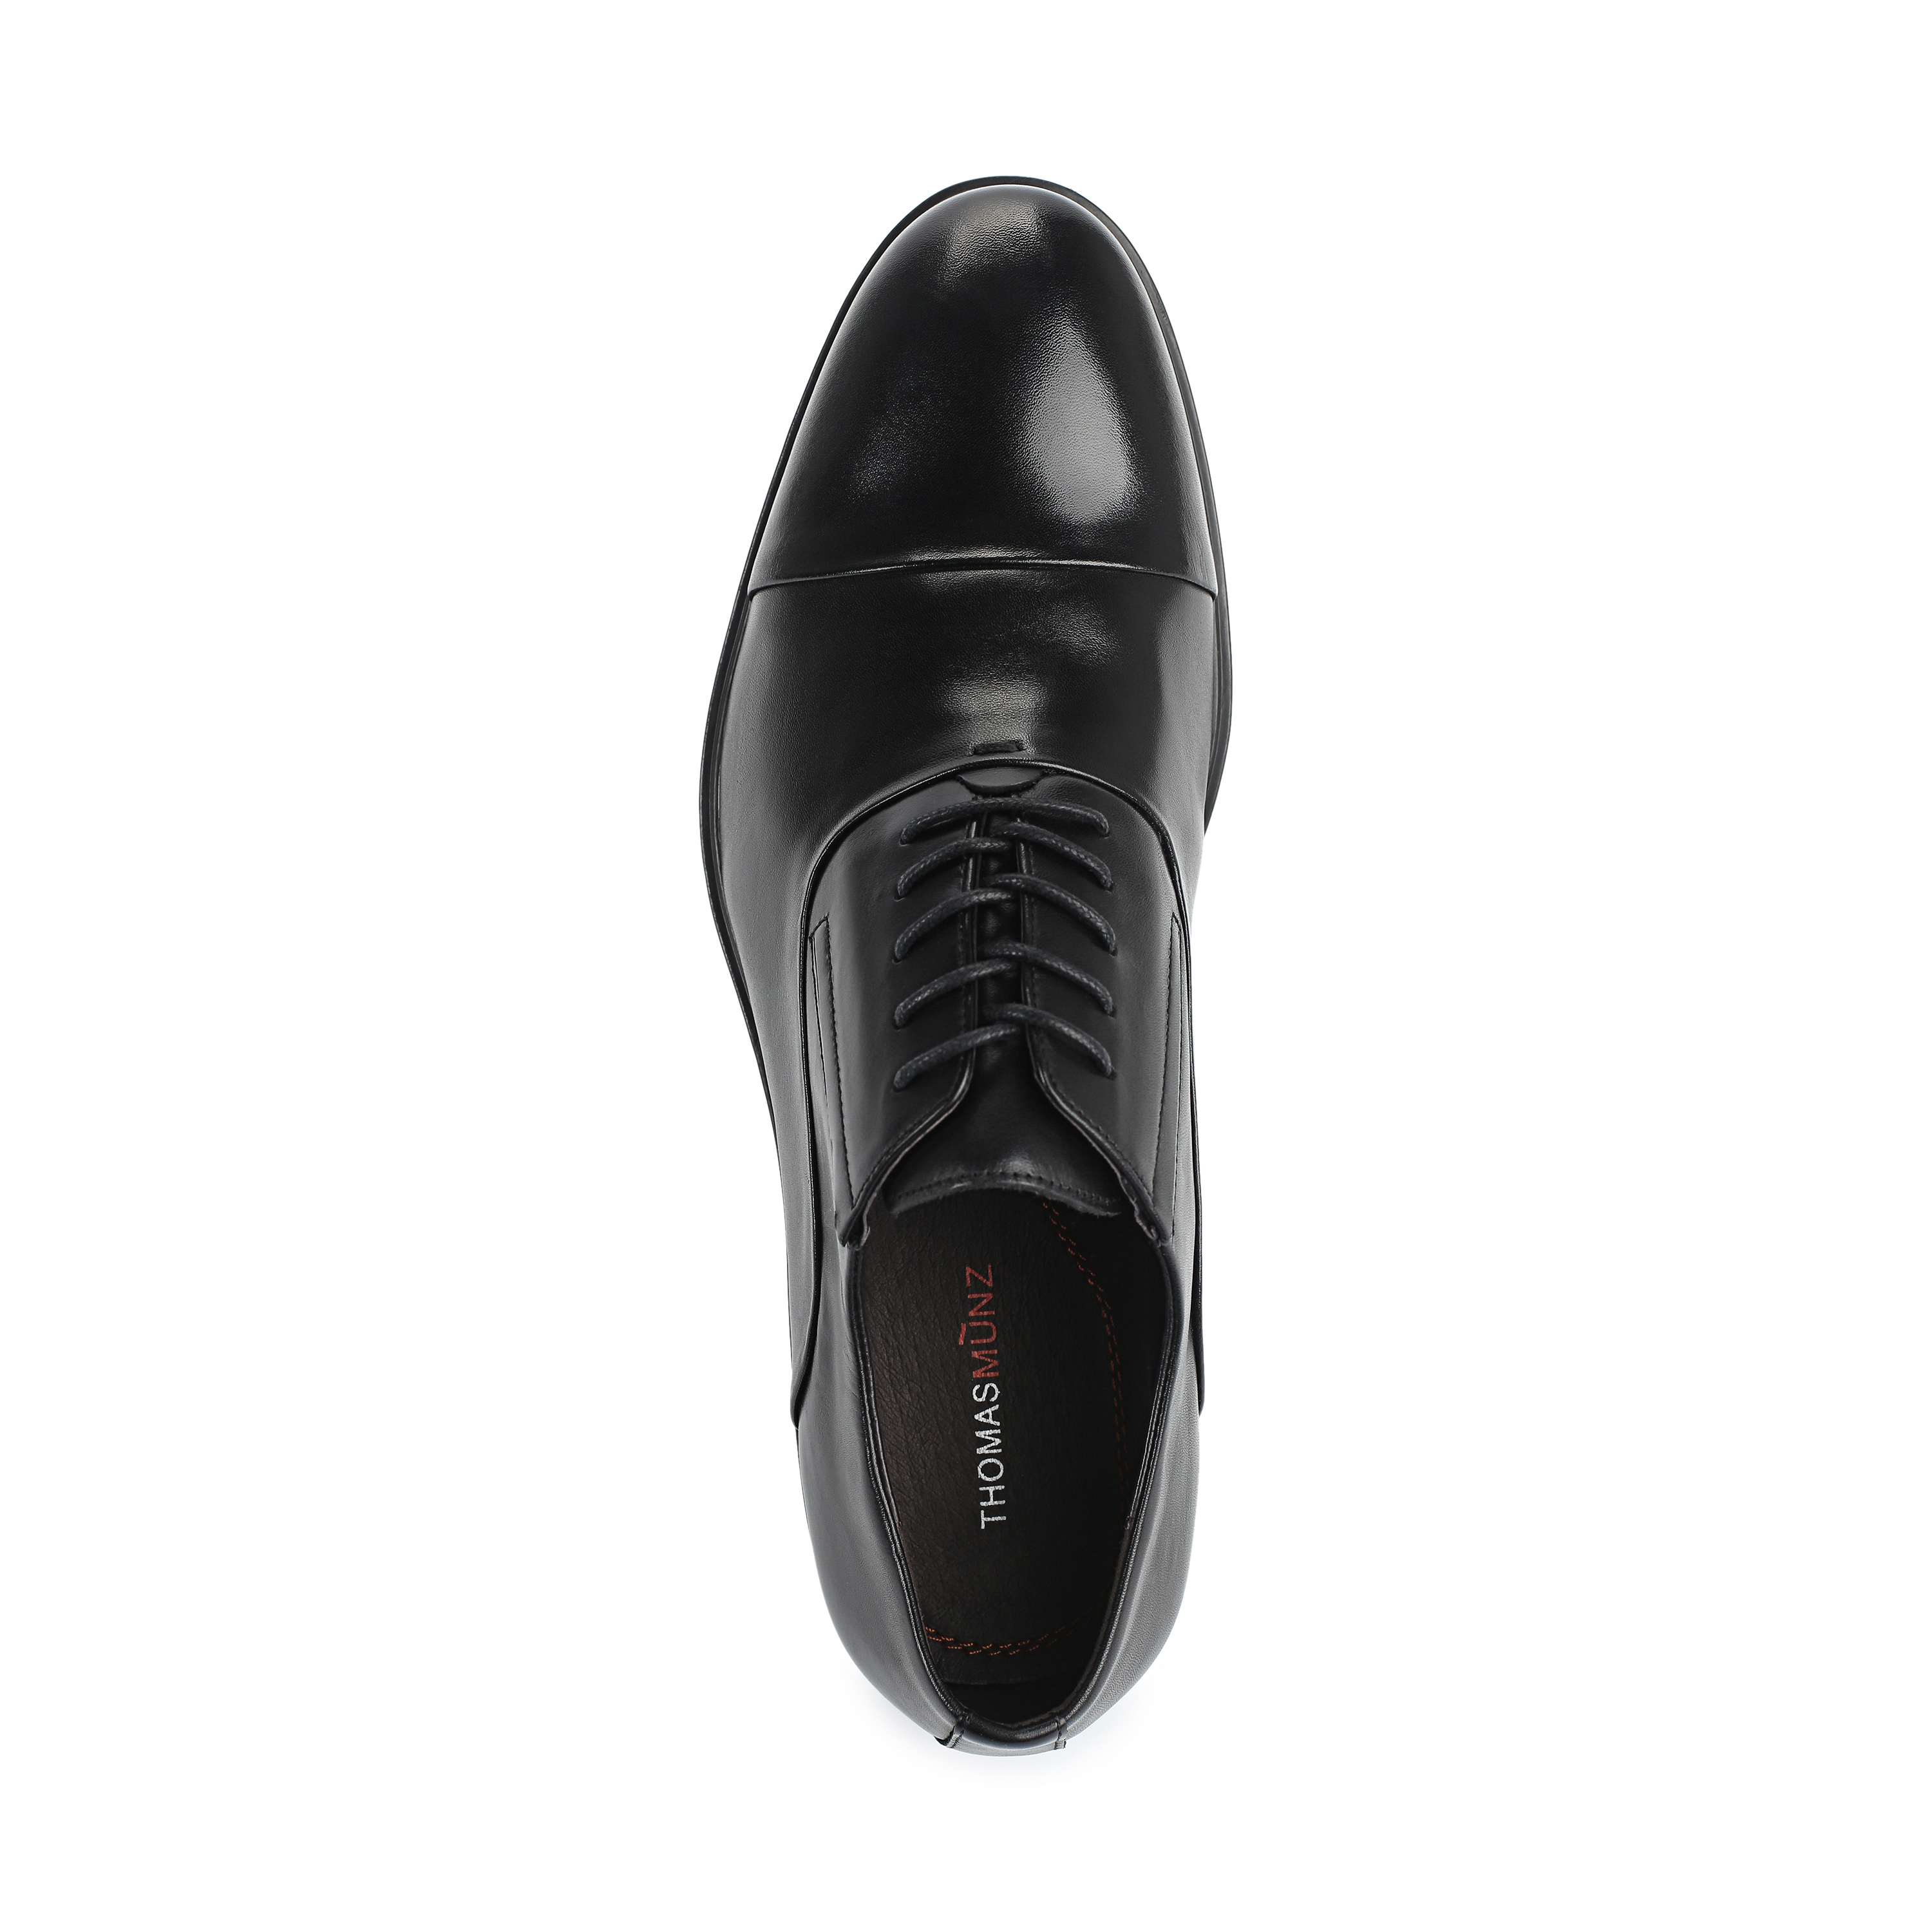 Туфли Thomas Munz 73-133C-1101, цвет черный, размер 41 - фото 5